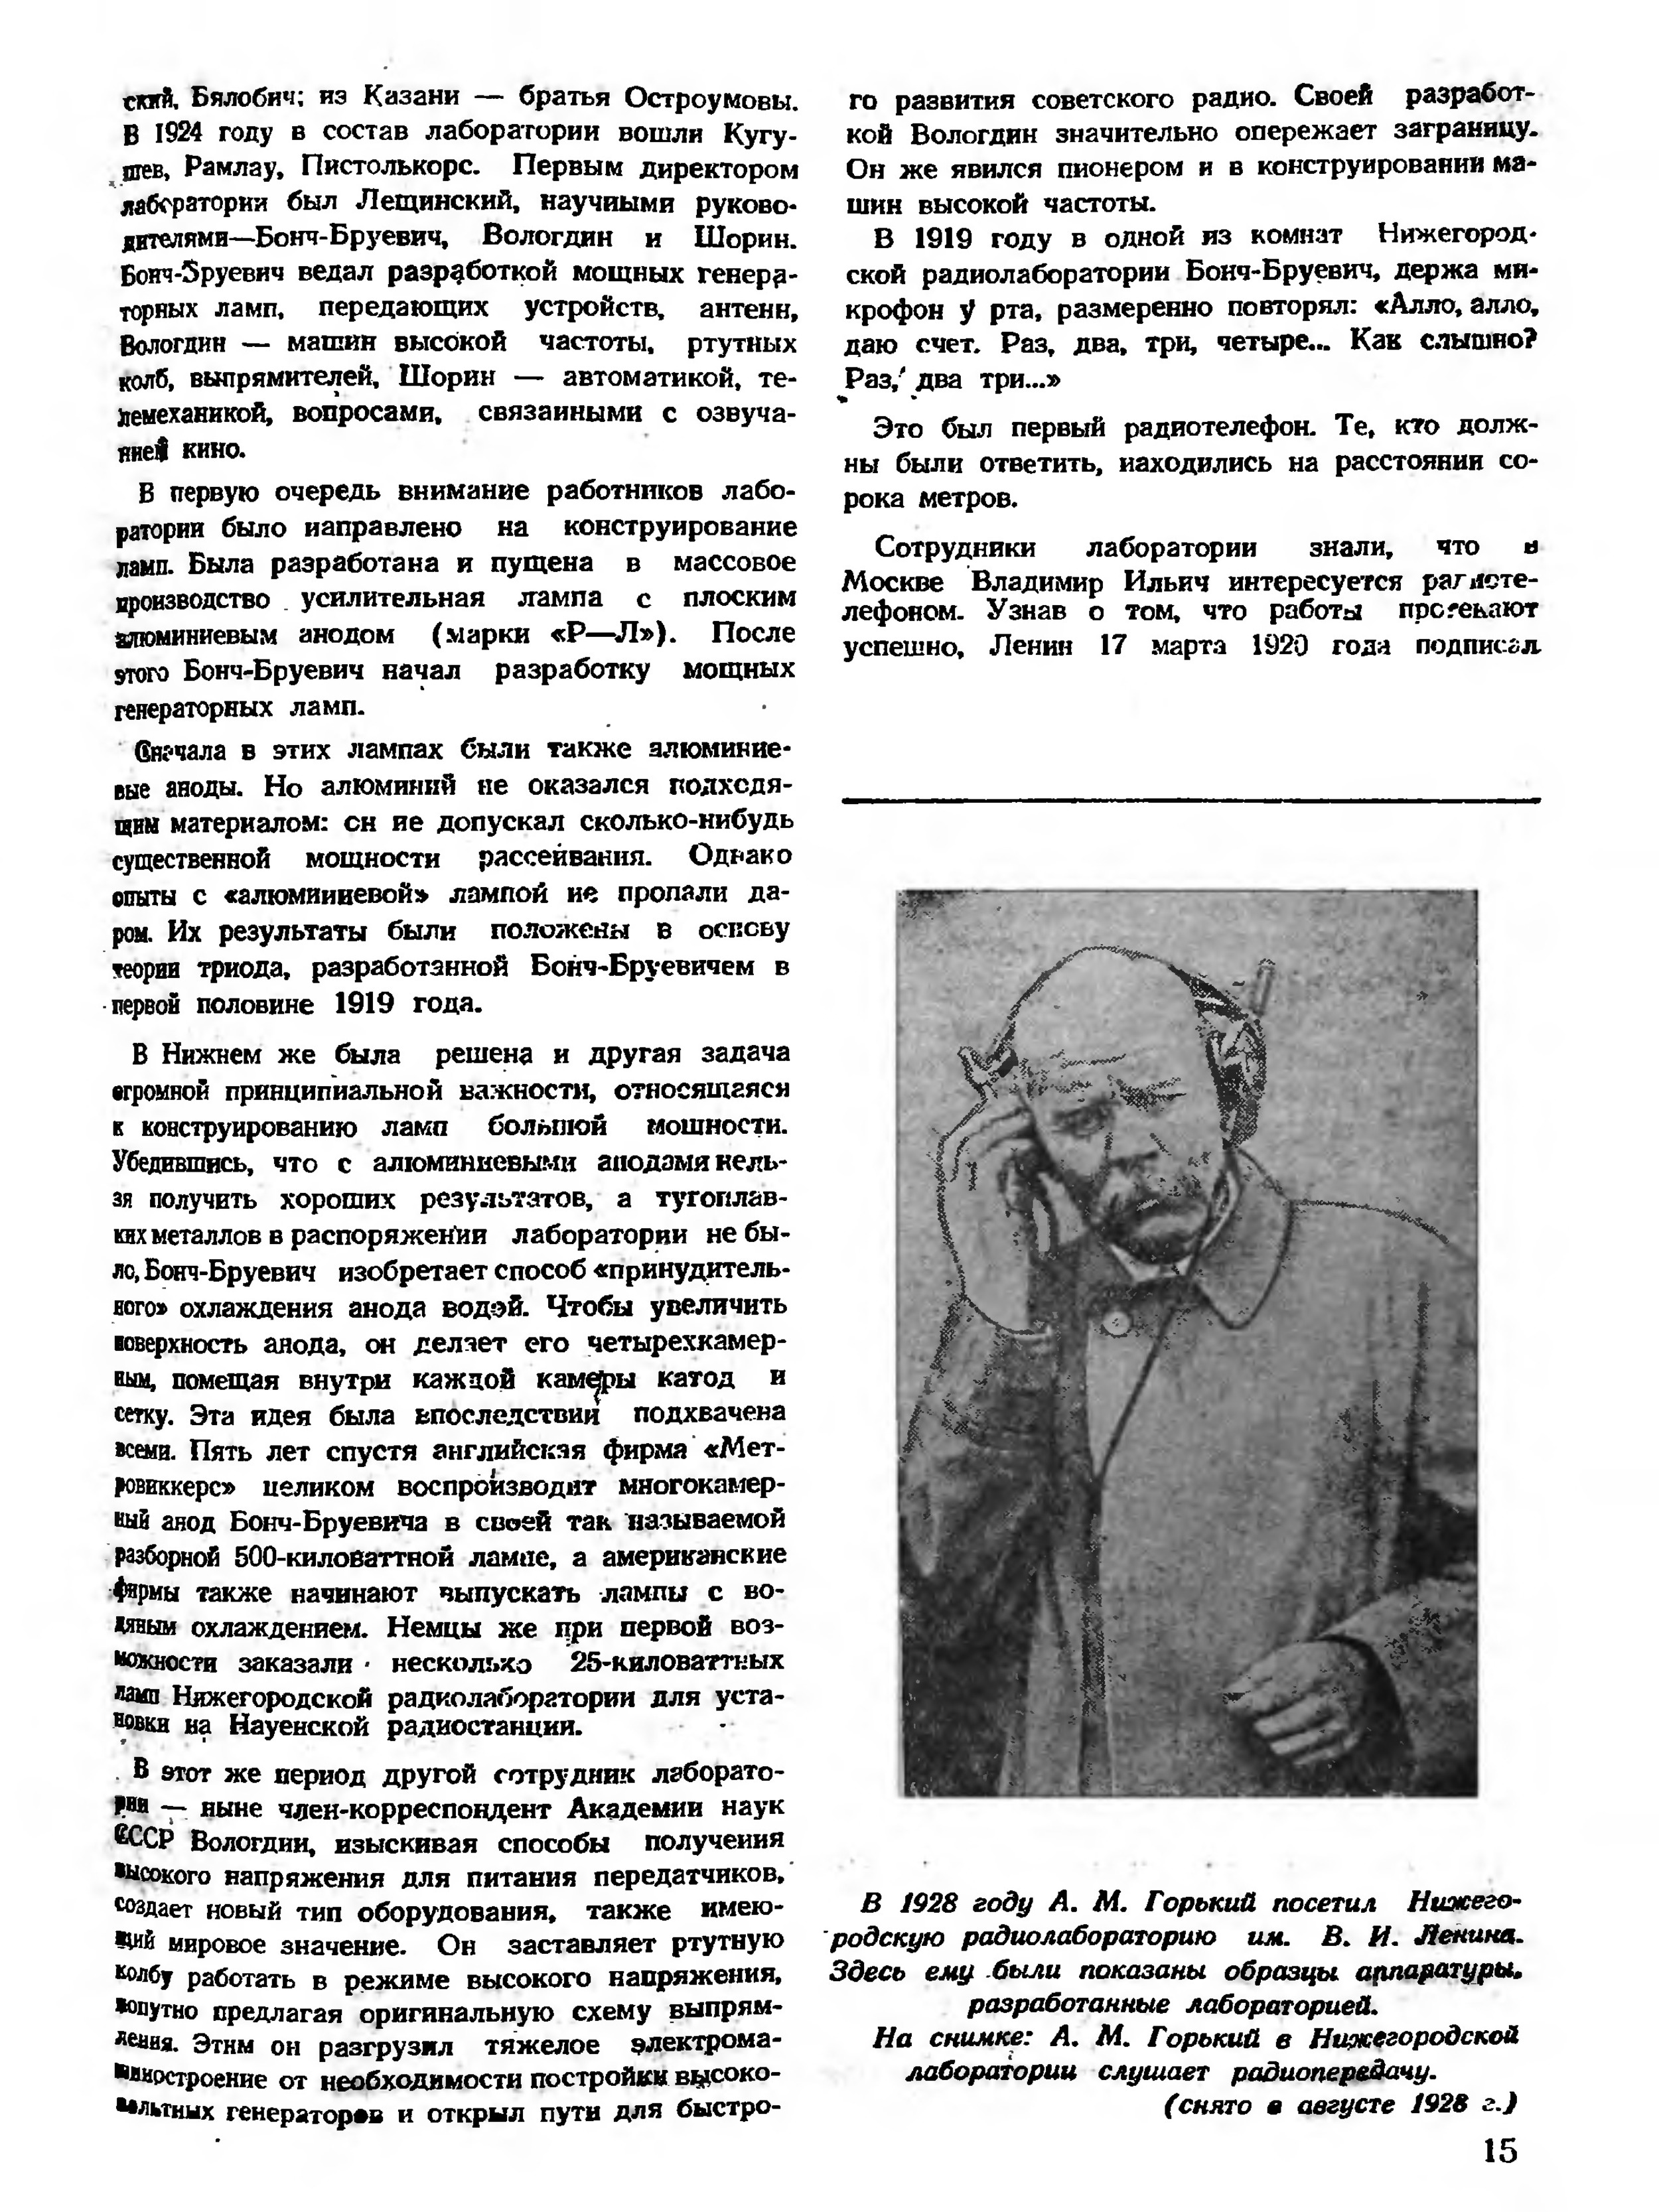 Стр. 15 журнала «Радио» № 11 за 1947 год (крупно)